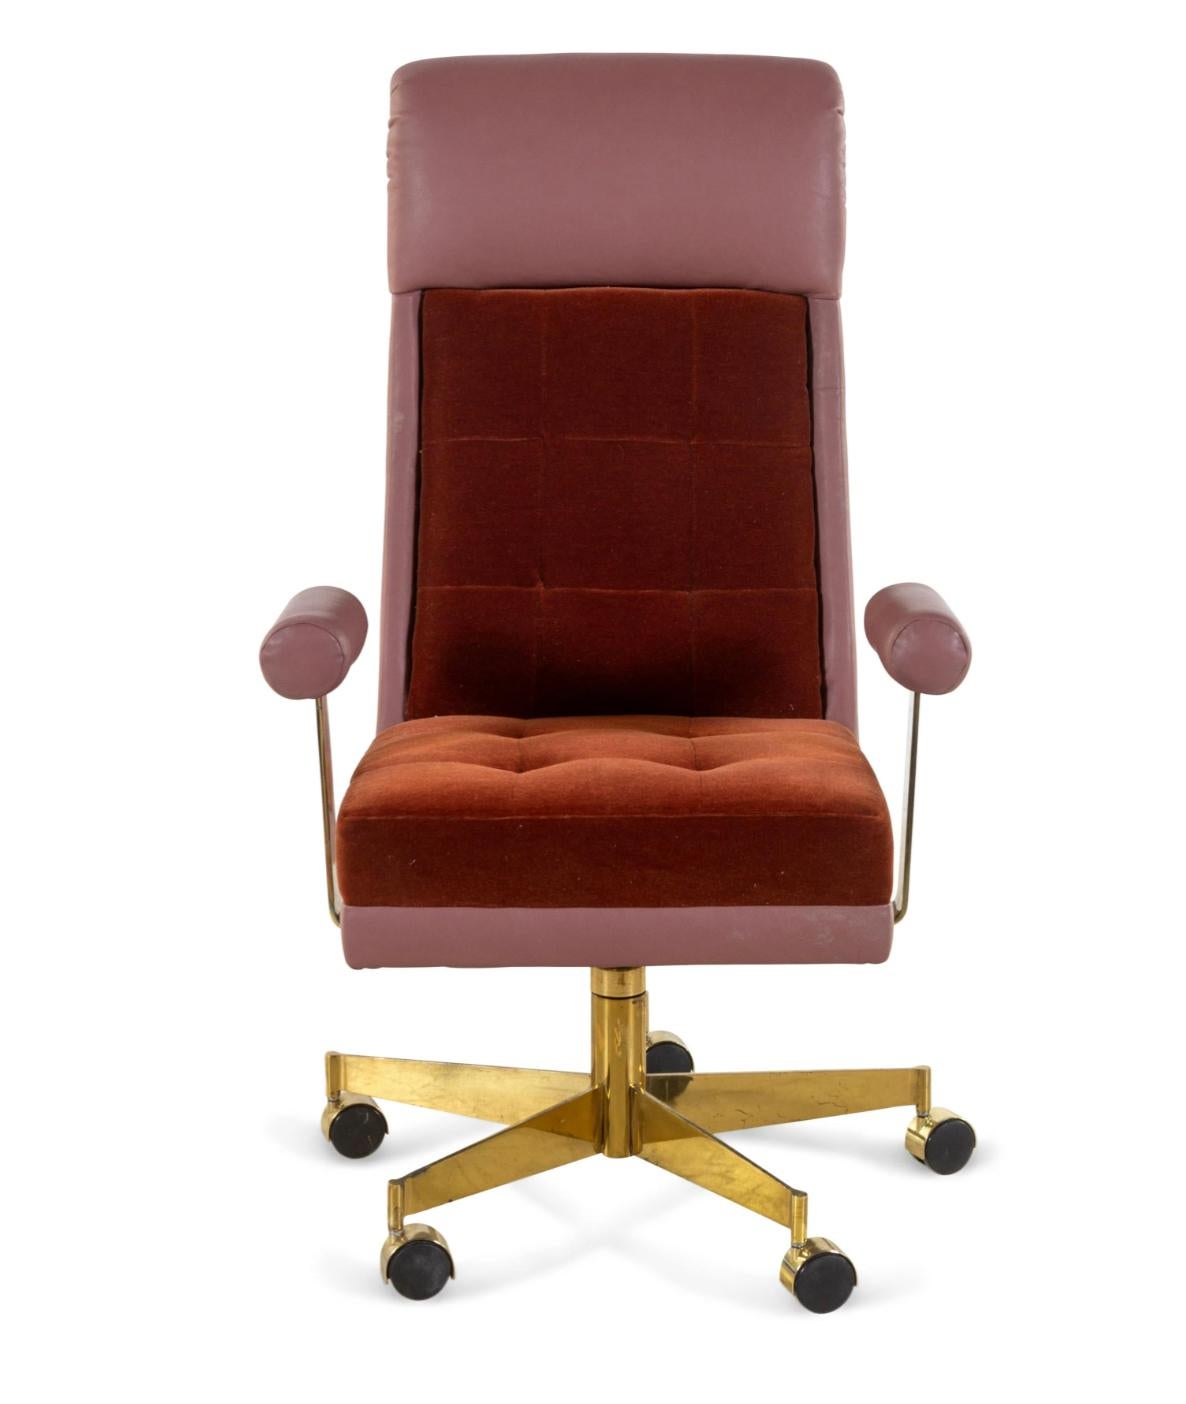 Ce magnifique fauteuil de bureau en cuir, mohair et laiton de Vladimir Kagan pour Vladimir Kagan Designs, Inc. est un rare exemple authentique signé avec son étiquette d'origine sous l'assise du fauteuil, conçu dans les années 1970 et fabriqué dans